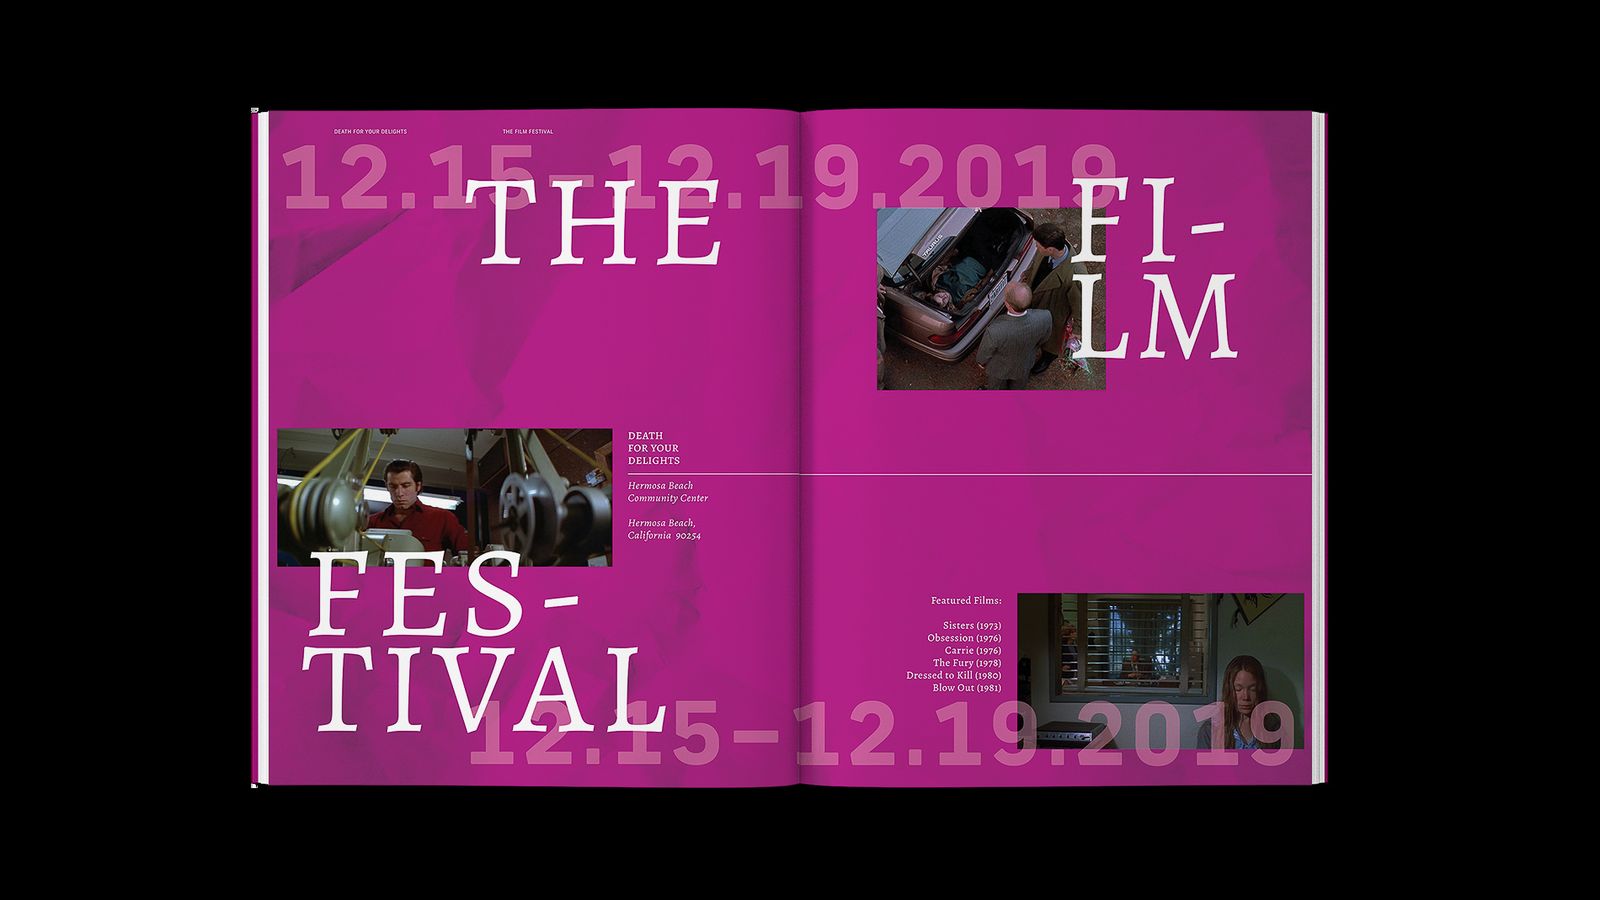 Brian De Palma Film Festival materials